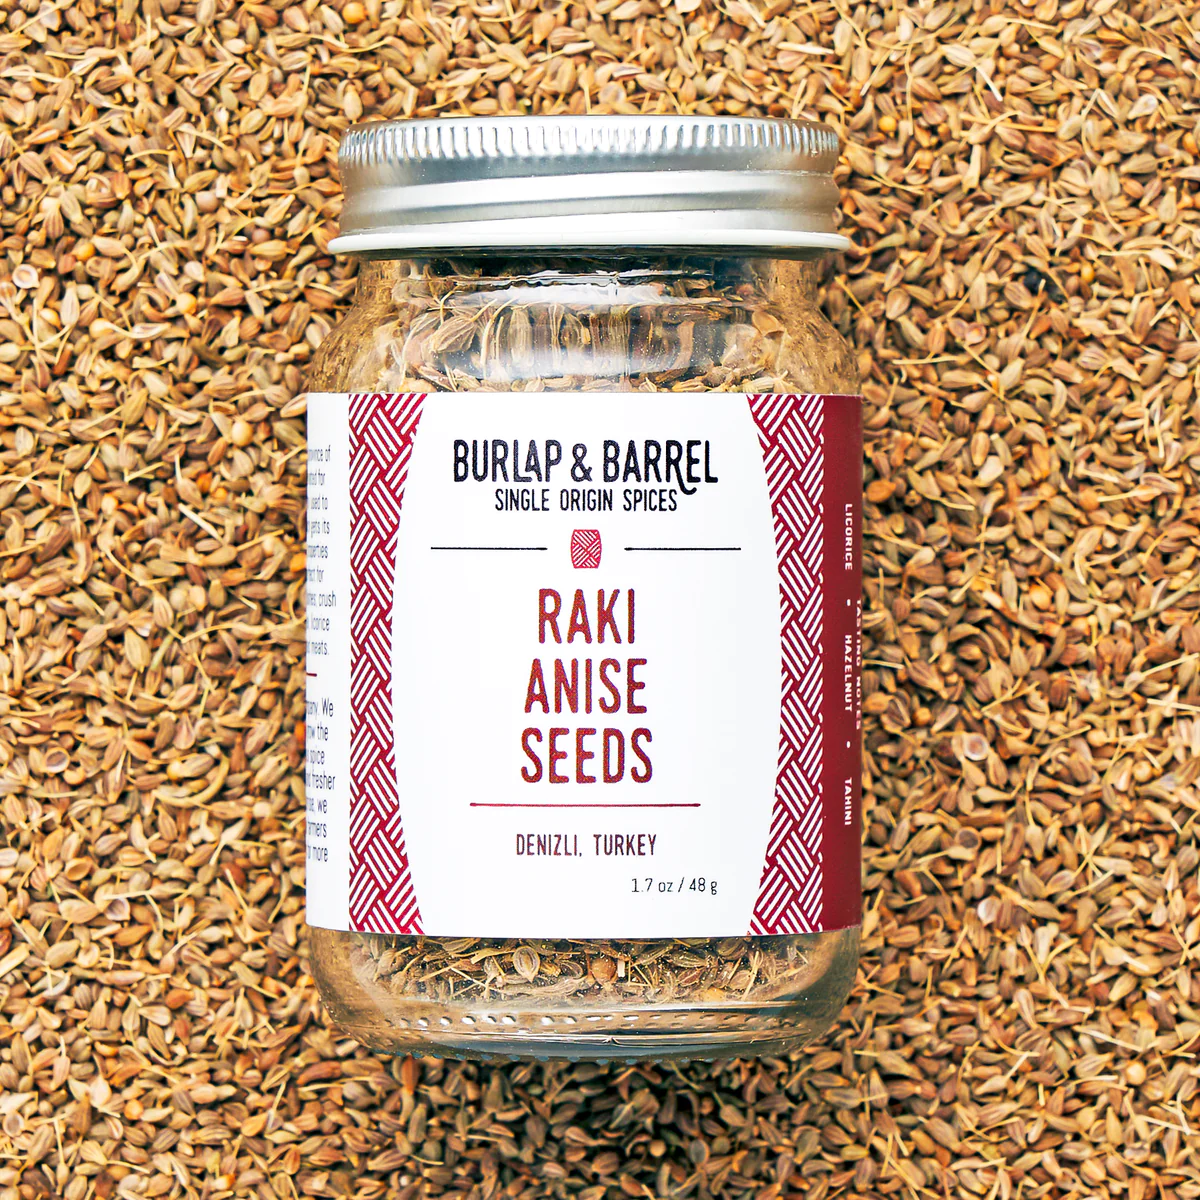 Raki Anise Seeds from Burlap & Barrel